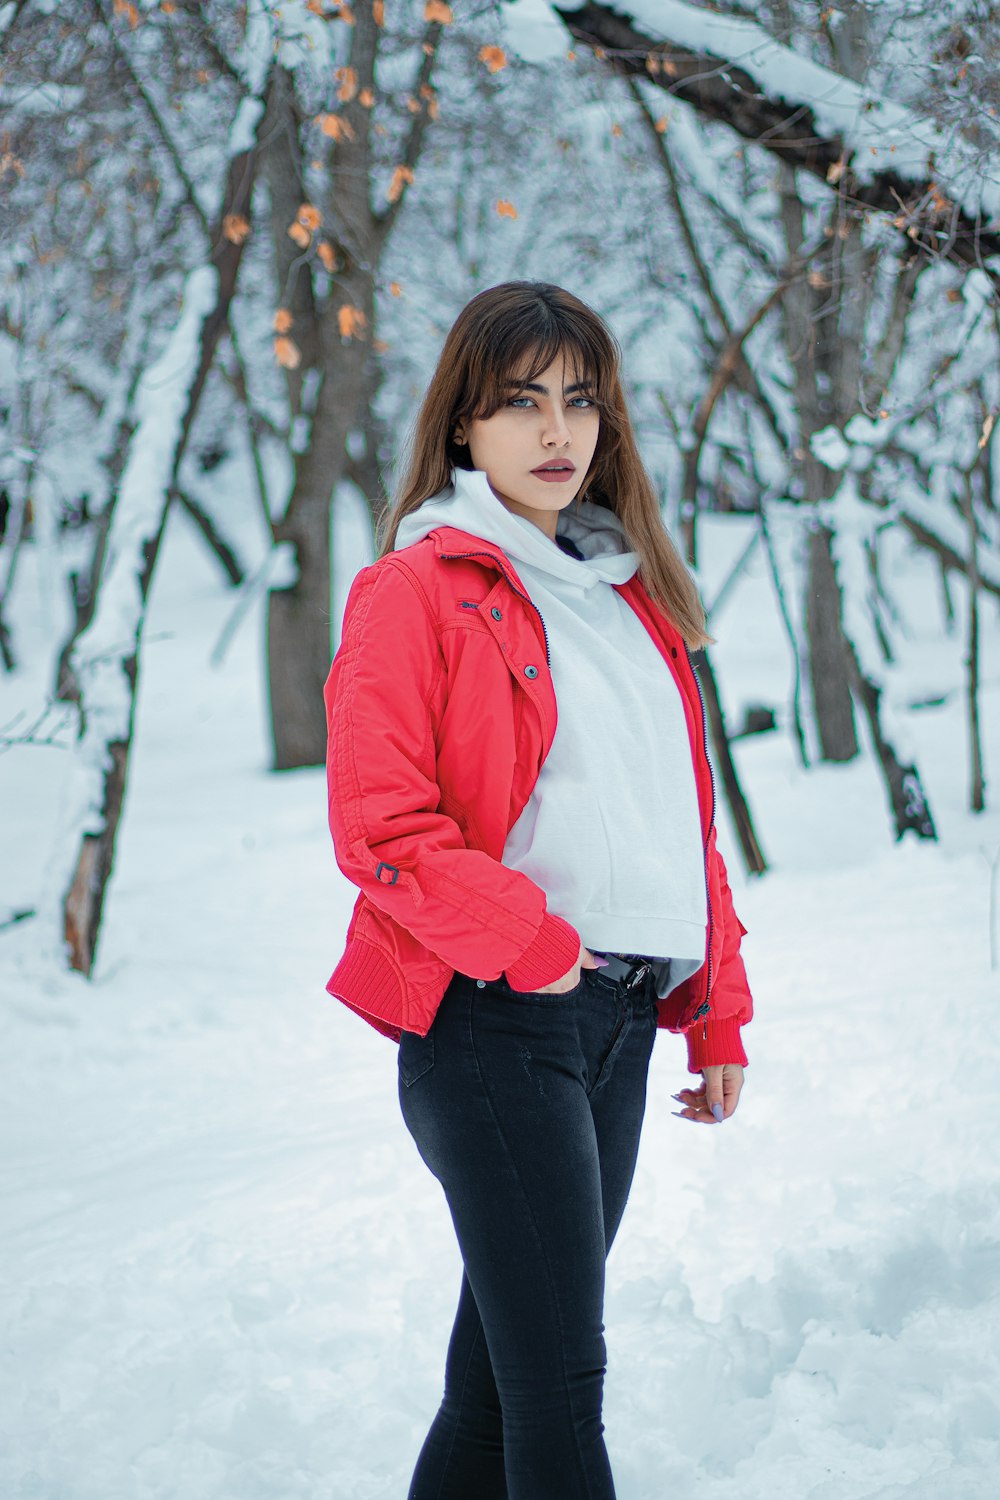 Foto Uma mulher em uma jaqueta vermelha está de pé na neve – Imagem de  Garota grátis no Unsplash